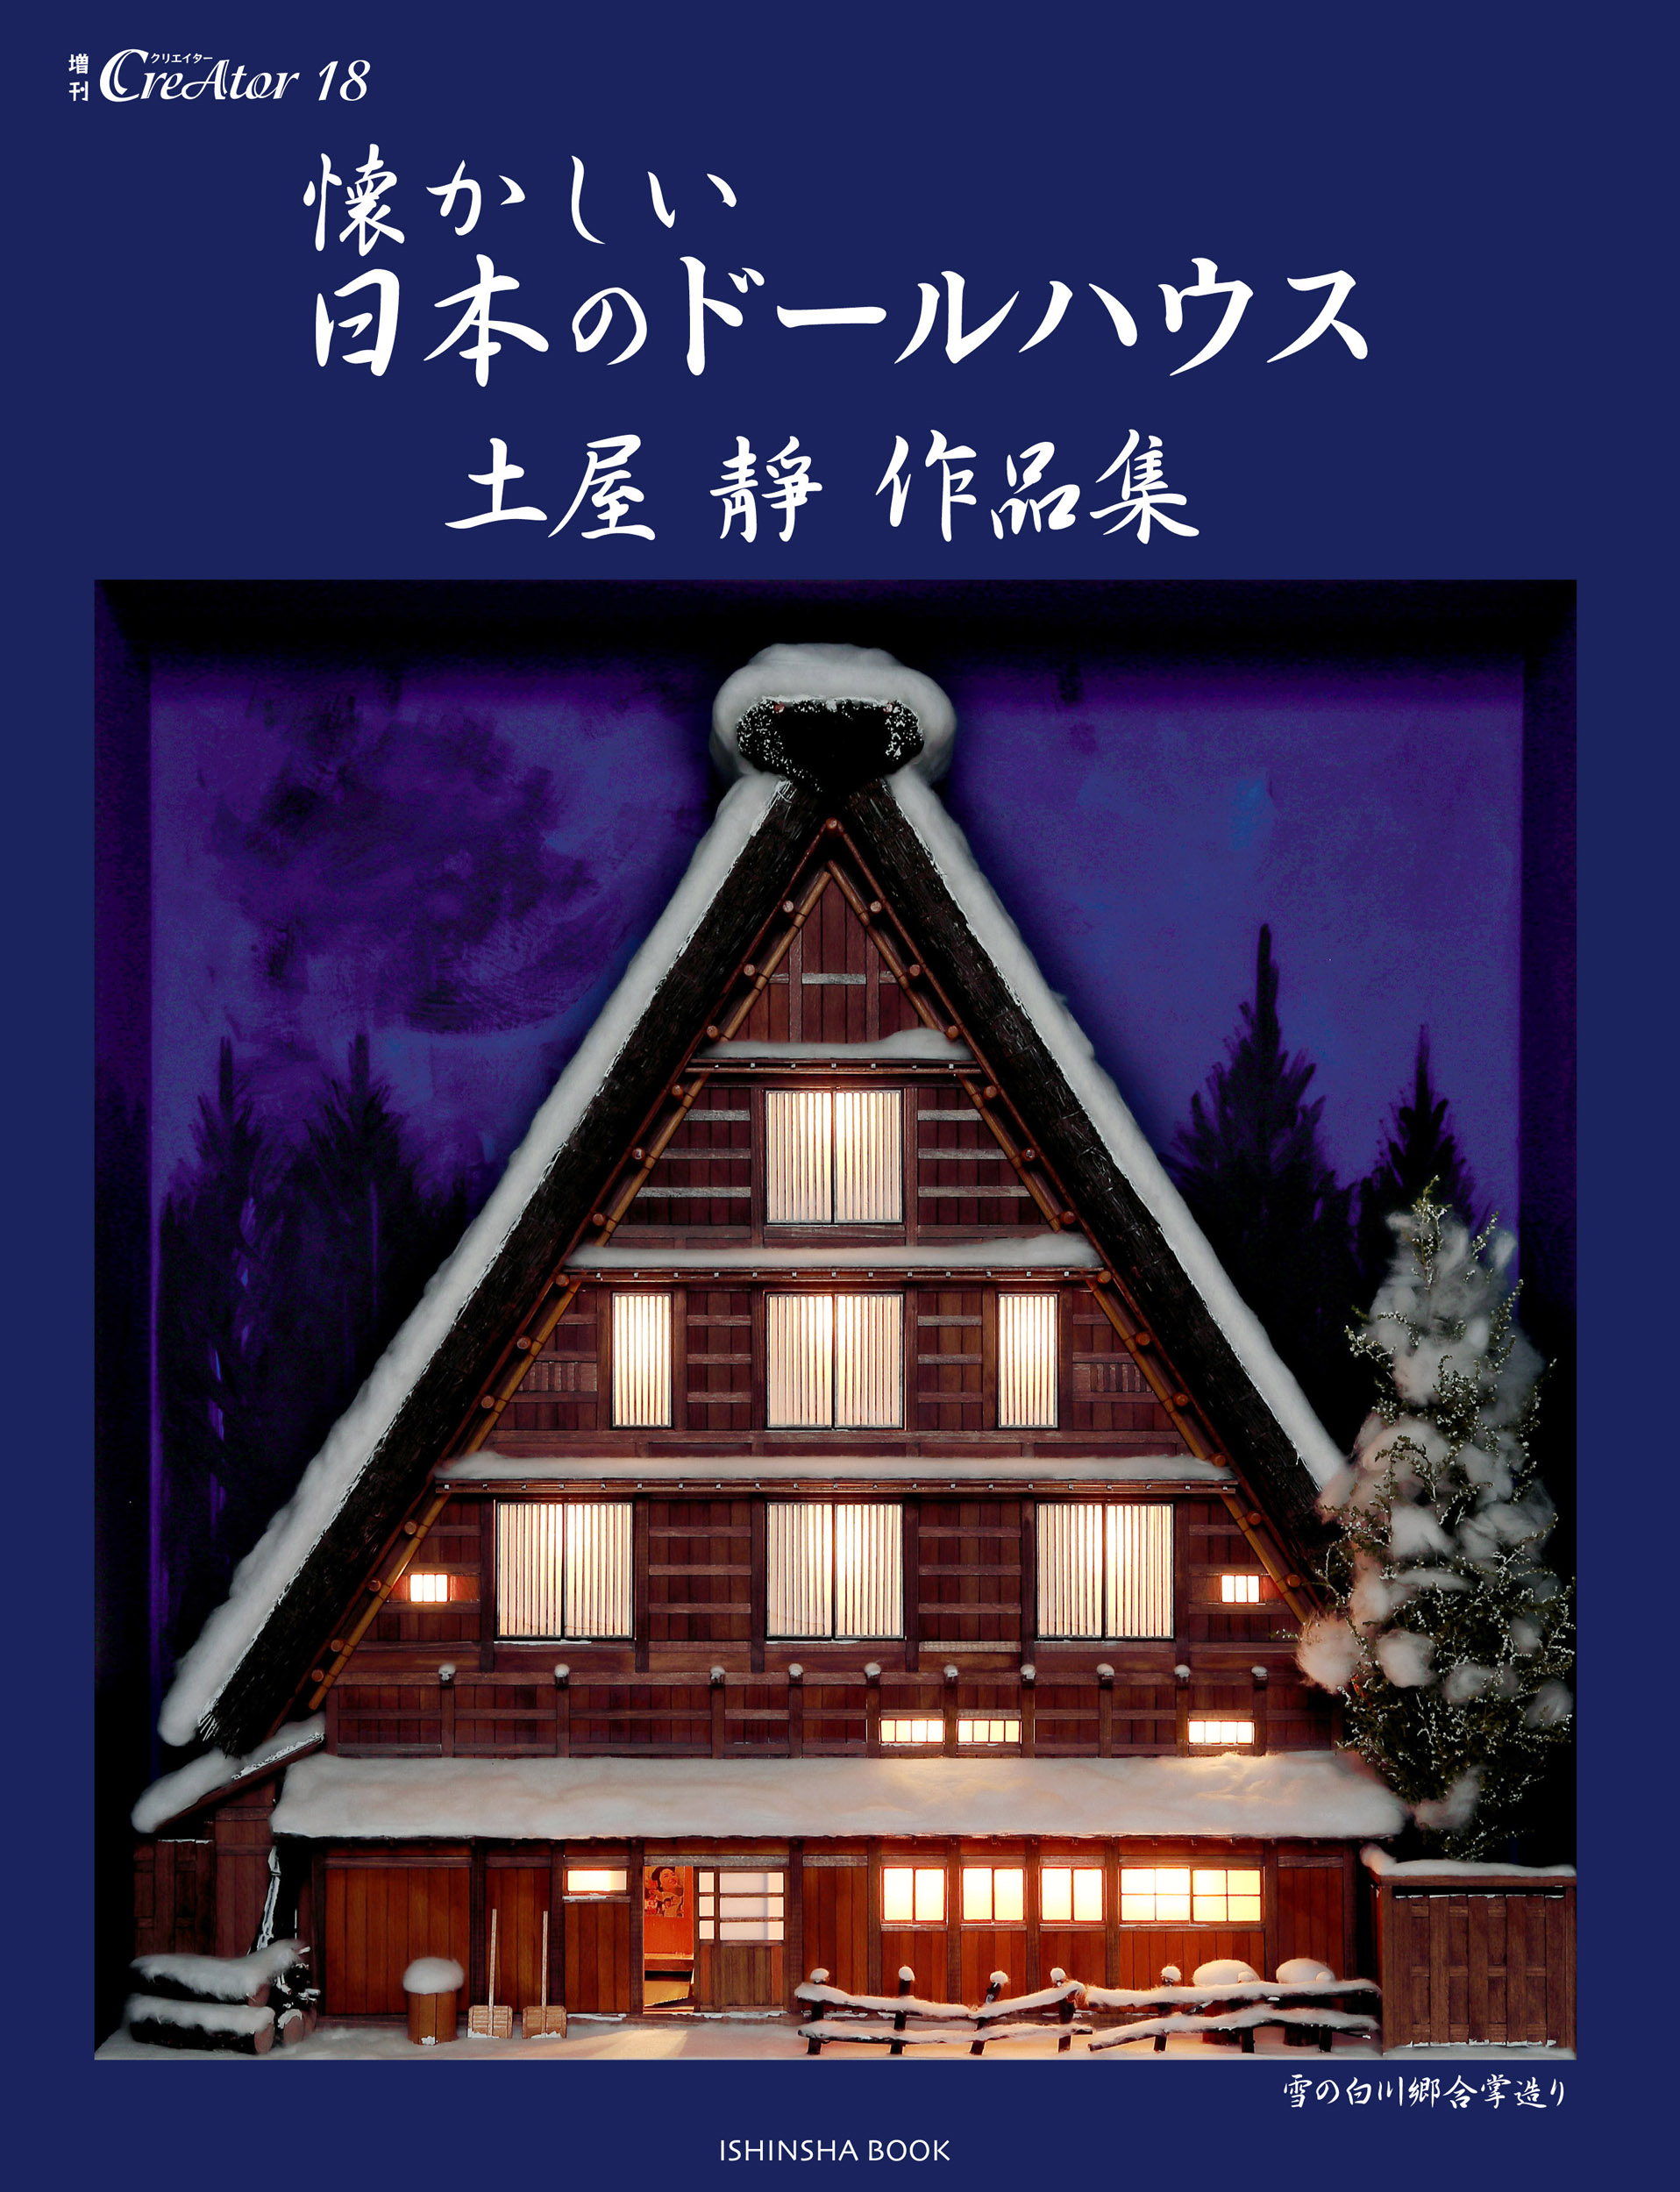 懐かしい日本のドールハウスの商品画像